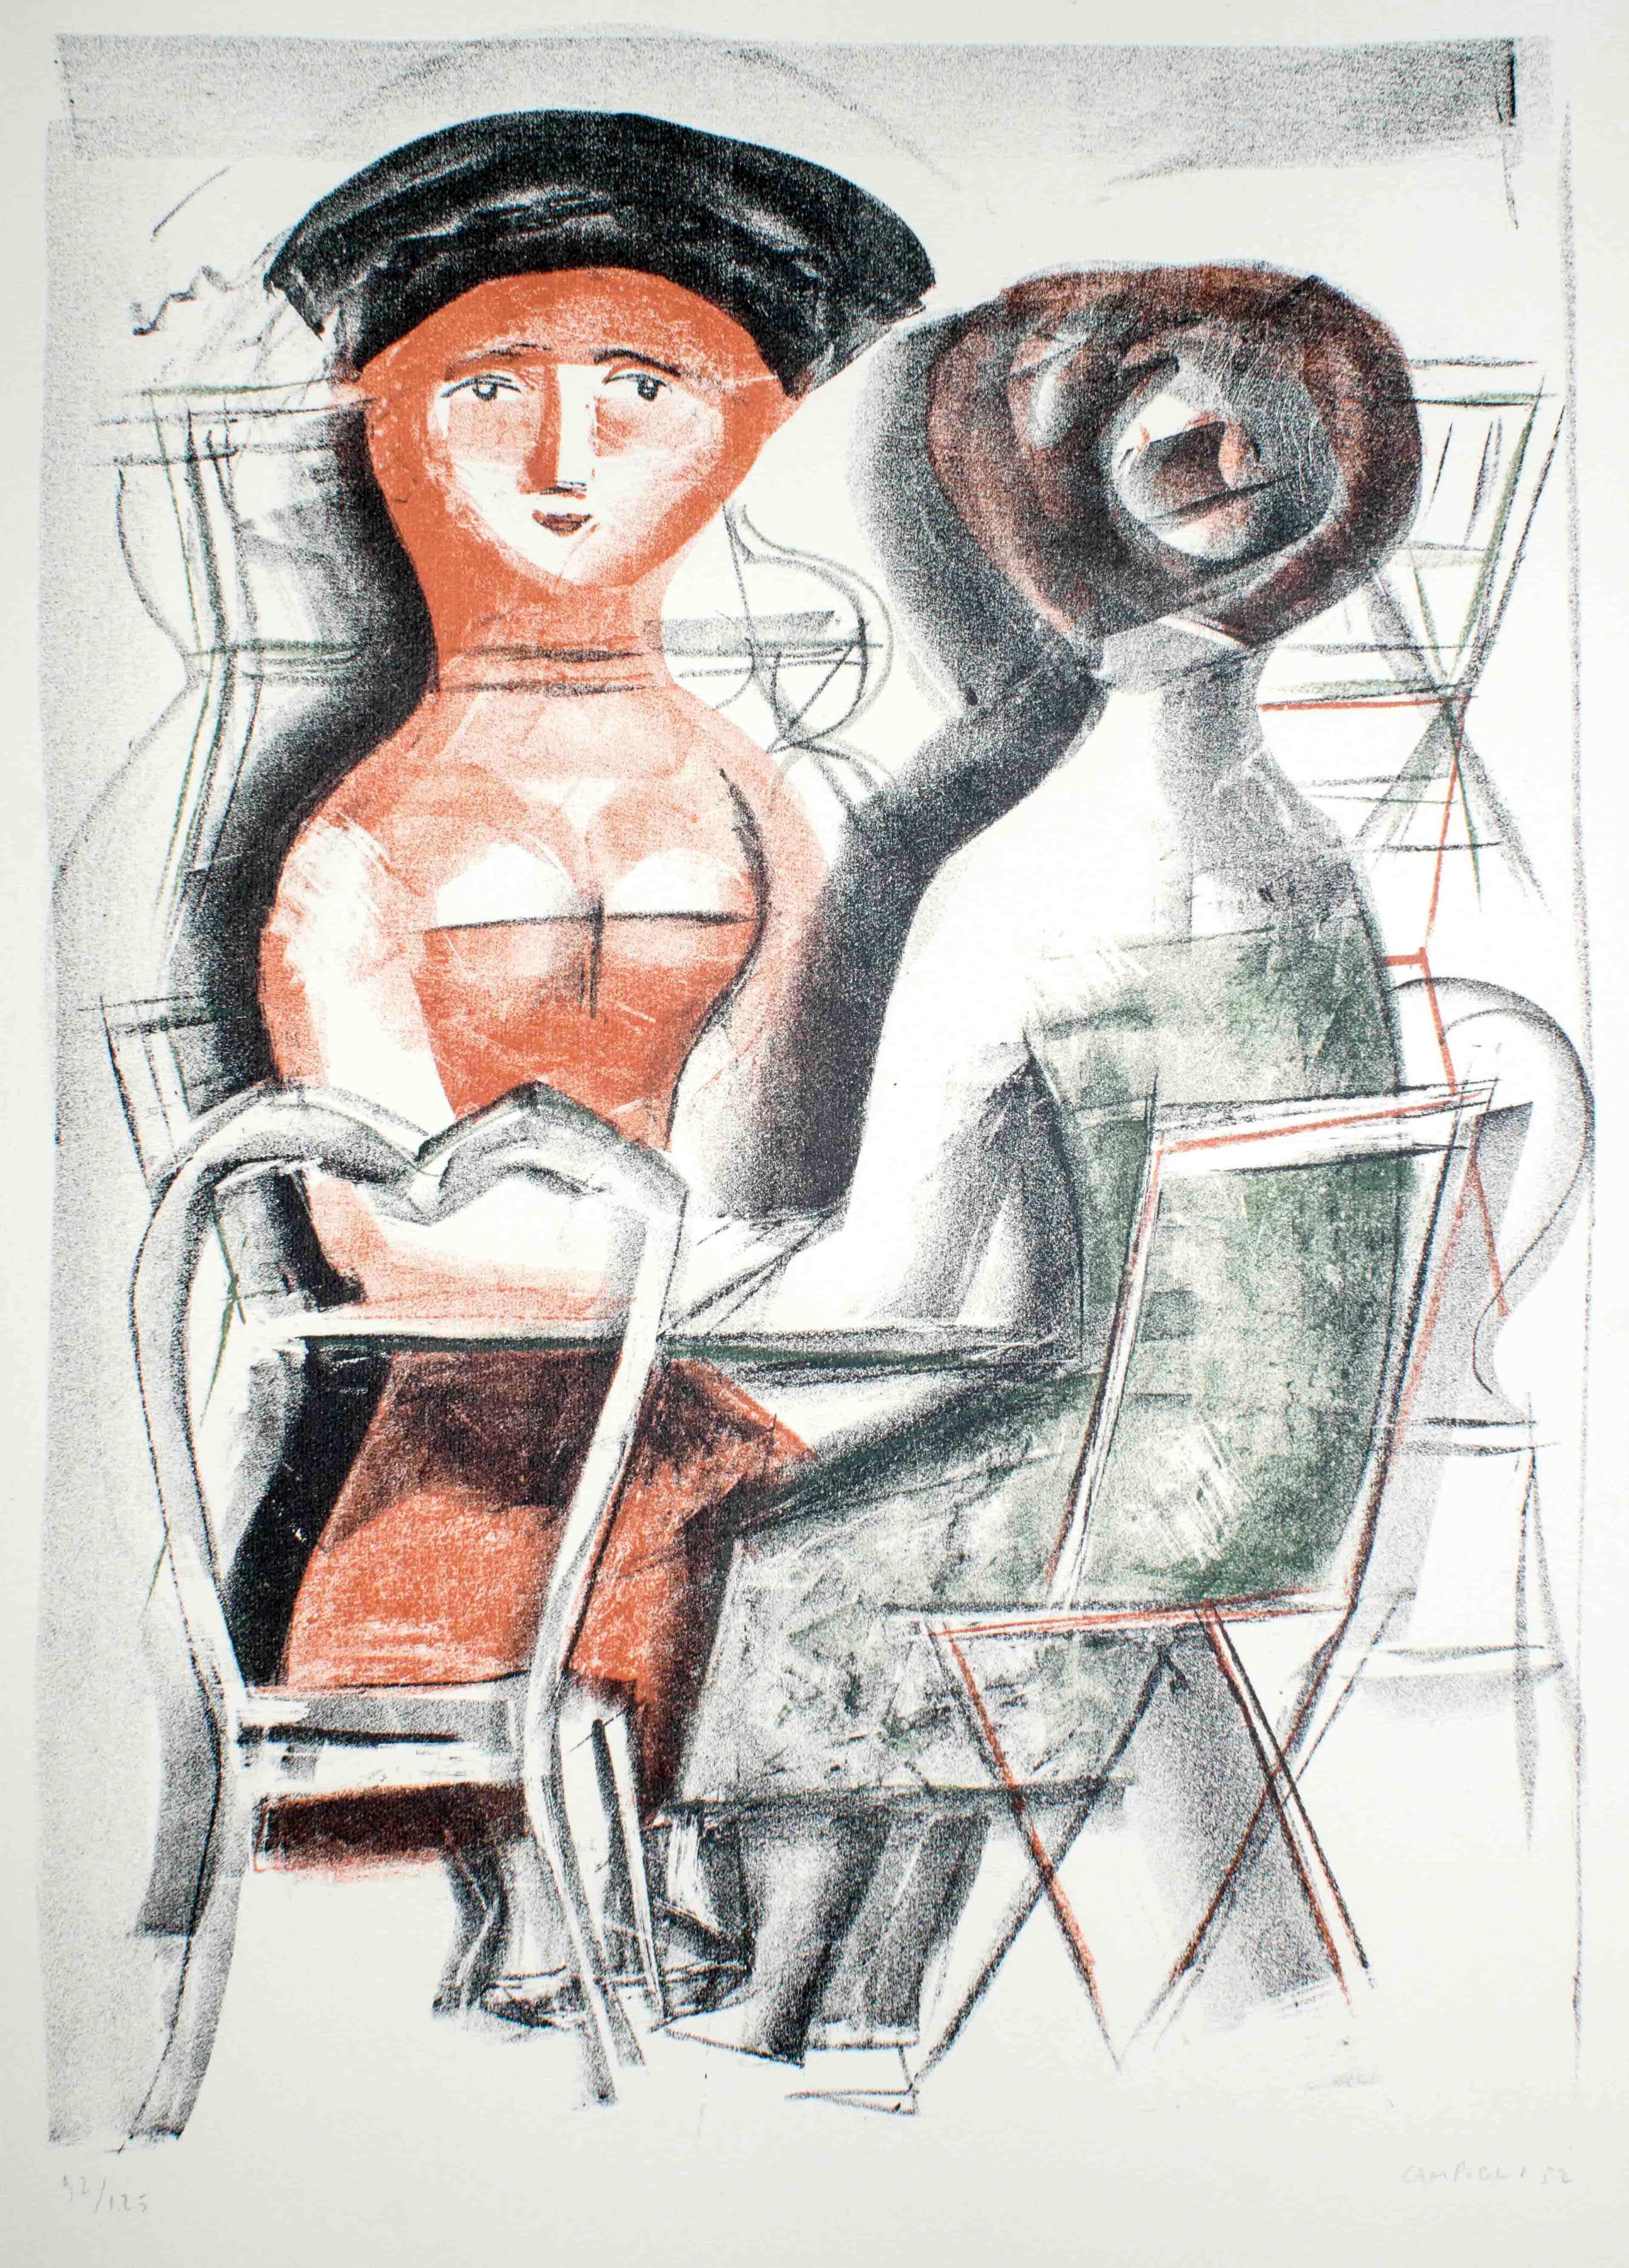 Handsigniert und nummeriert. Auflage: 125 Exemplare.
In der Lithografie "Donne al tavolino" aus dem Jahr 1952 stellt Massimo Campigli zwei Frauen an einem kleinen Tisch dar, die sich unterhalten. 

Dieses Kunstwerk wird aus Italien verschickt. Nach